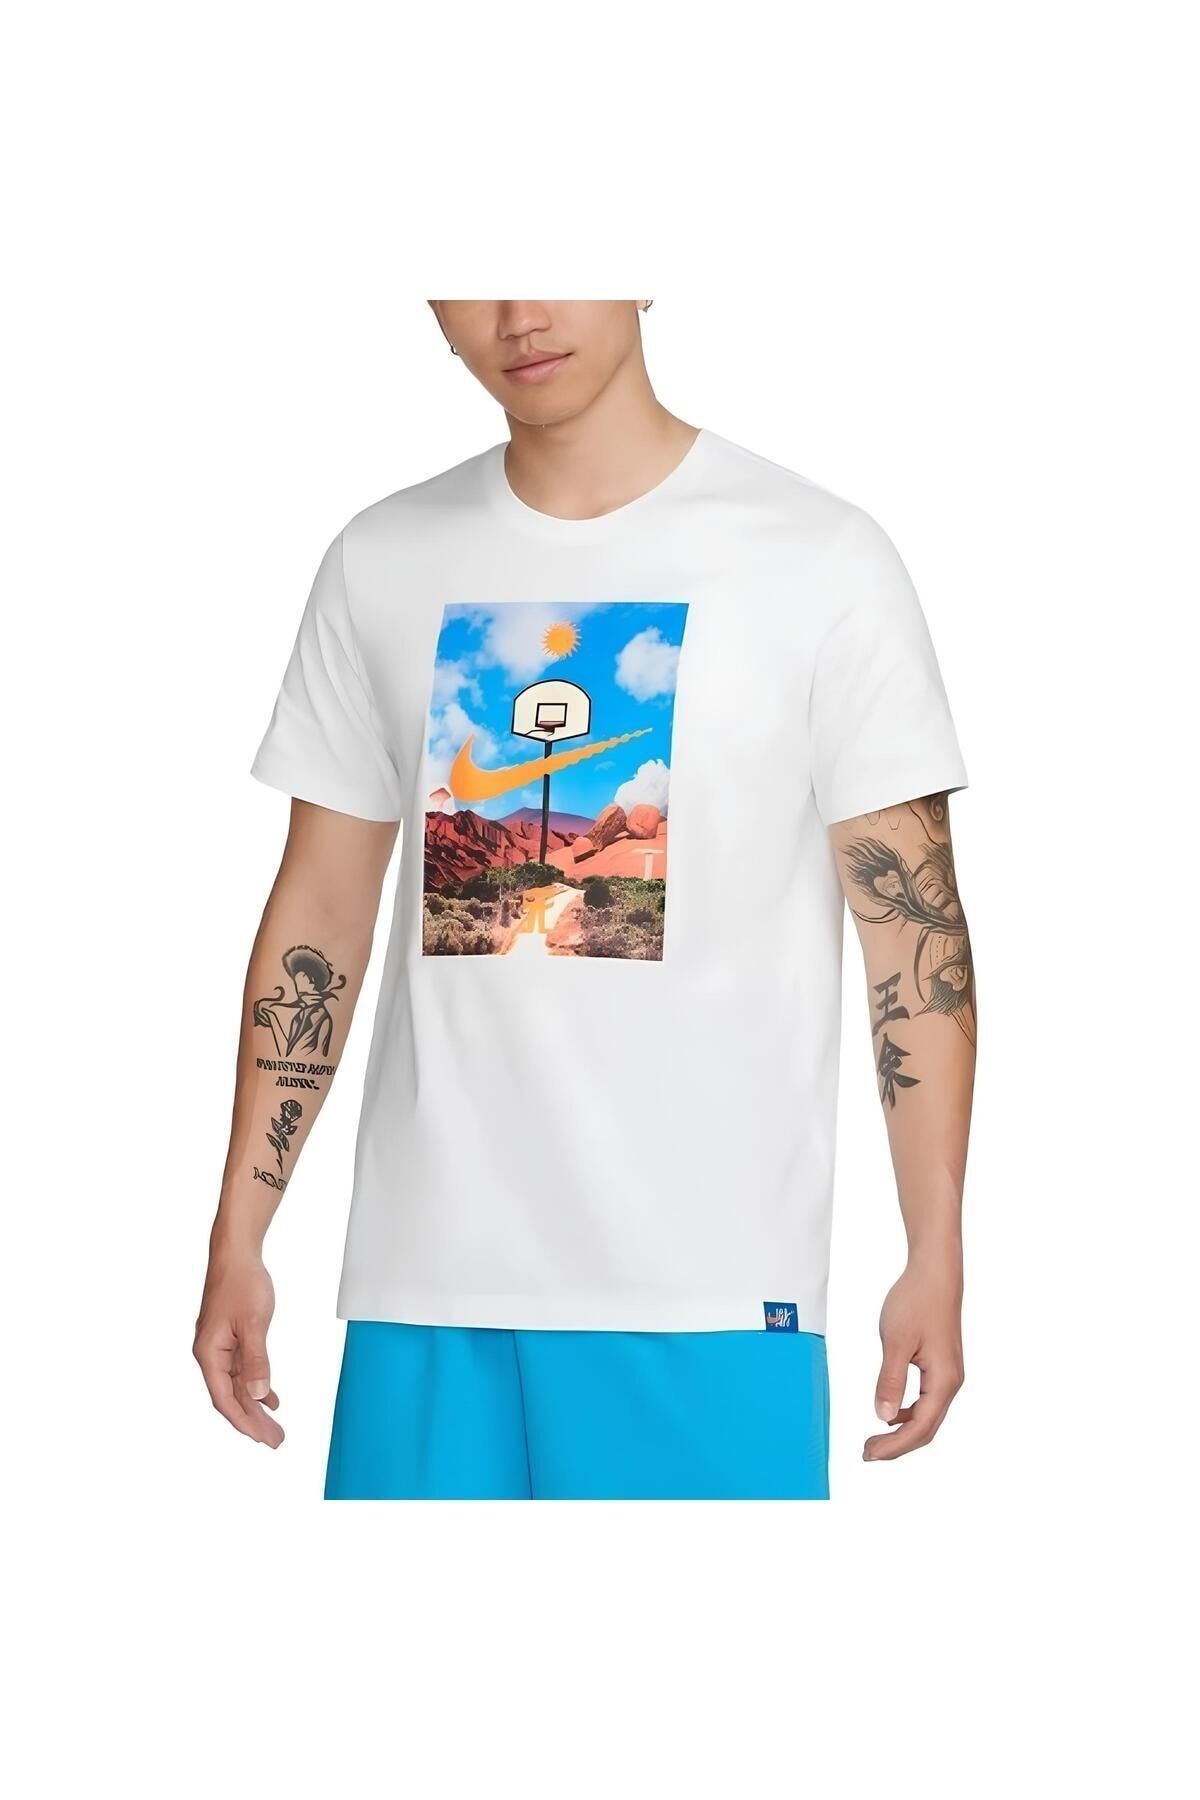 Nike Men's Basketball T-Shirt 'White'